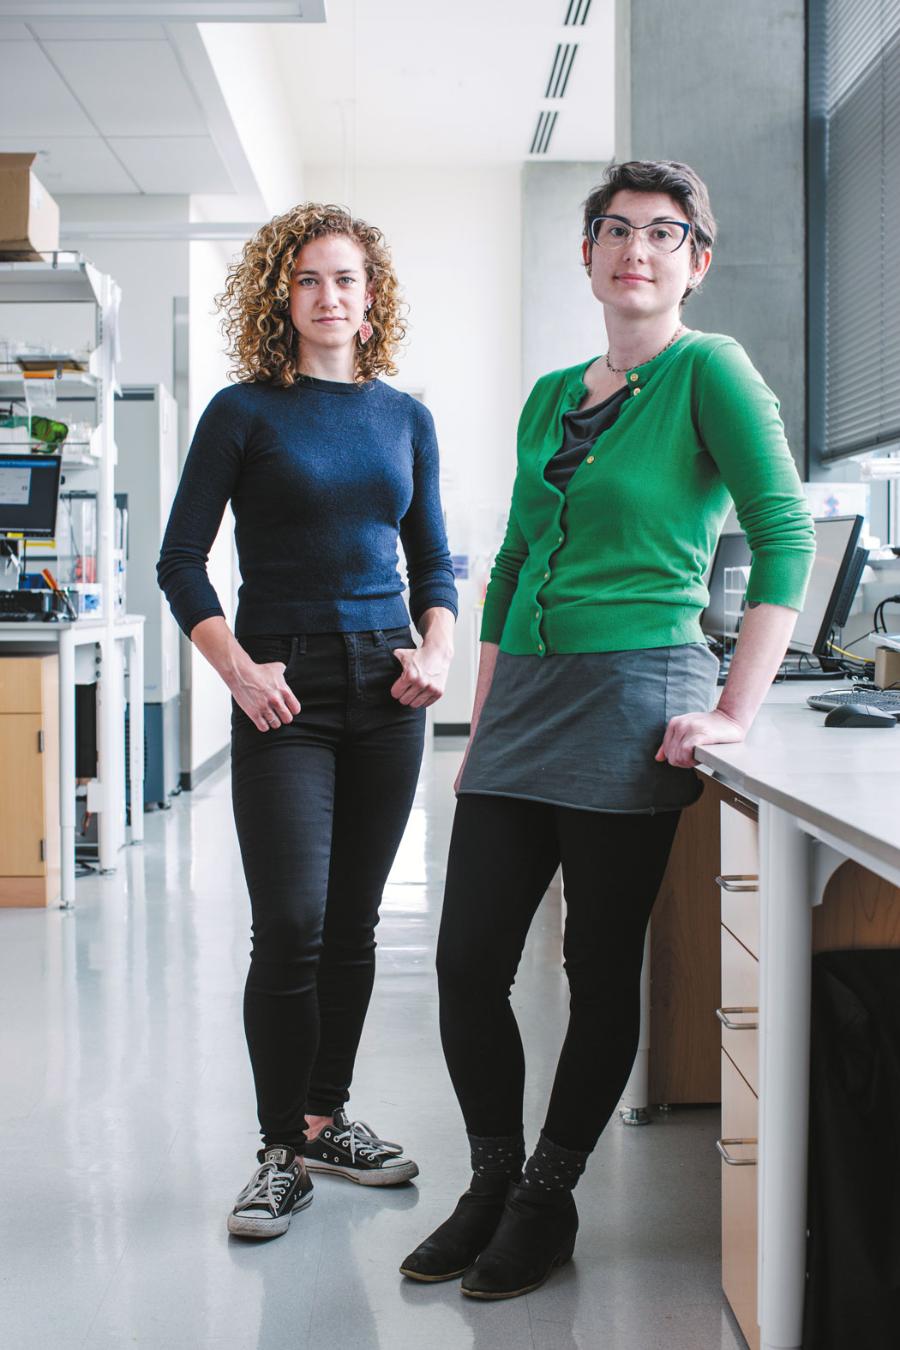 Twórczynie szczepionki Lexi Walls (po lewej) i Brooke Fiala (po prawej) wykorzystały indywidualnie projektowane białka do stworzenia nowej, obiecującej szczepionki przeciwko COVID. Wymachuje ona wrażliwym elementem wirusa SARS-CoV-2 przed komórkami układu odpornościowego, wyzwalając silną reakcję neutralizującą.